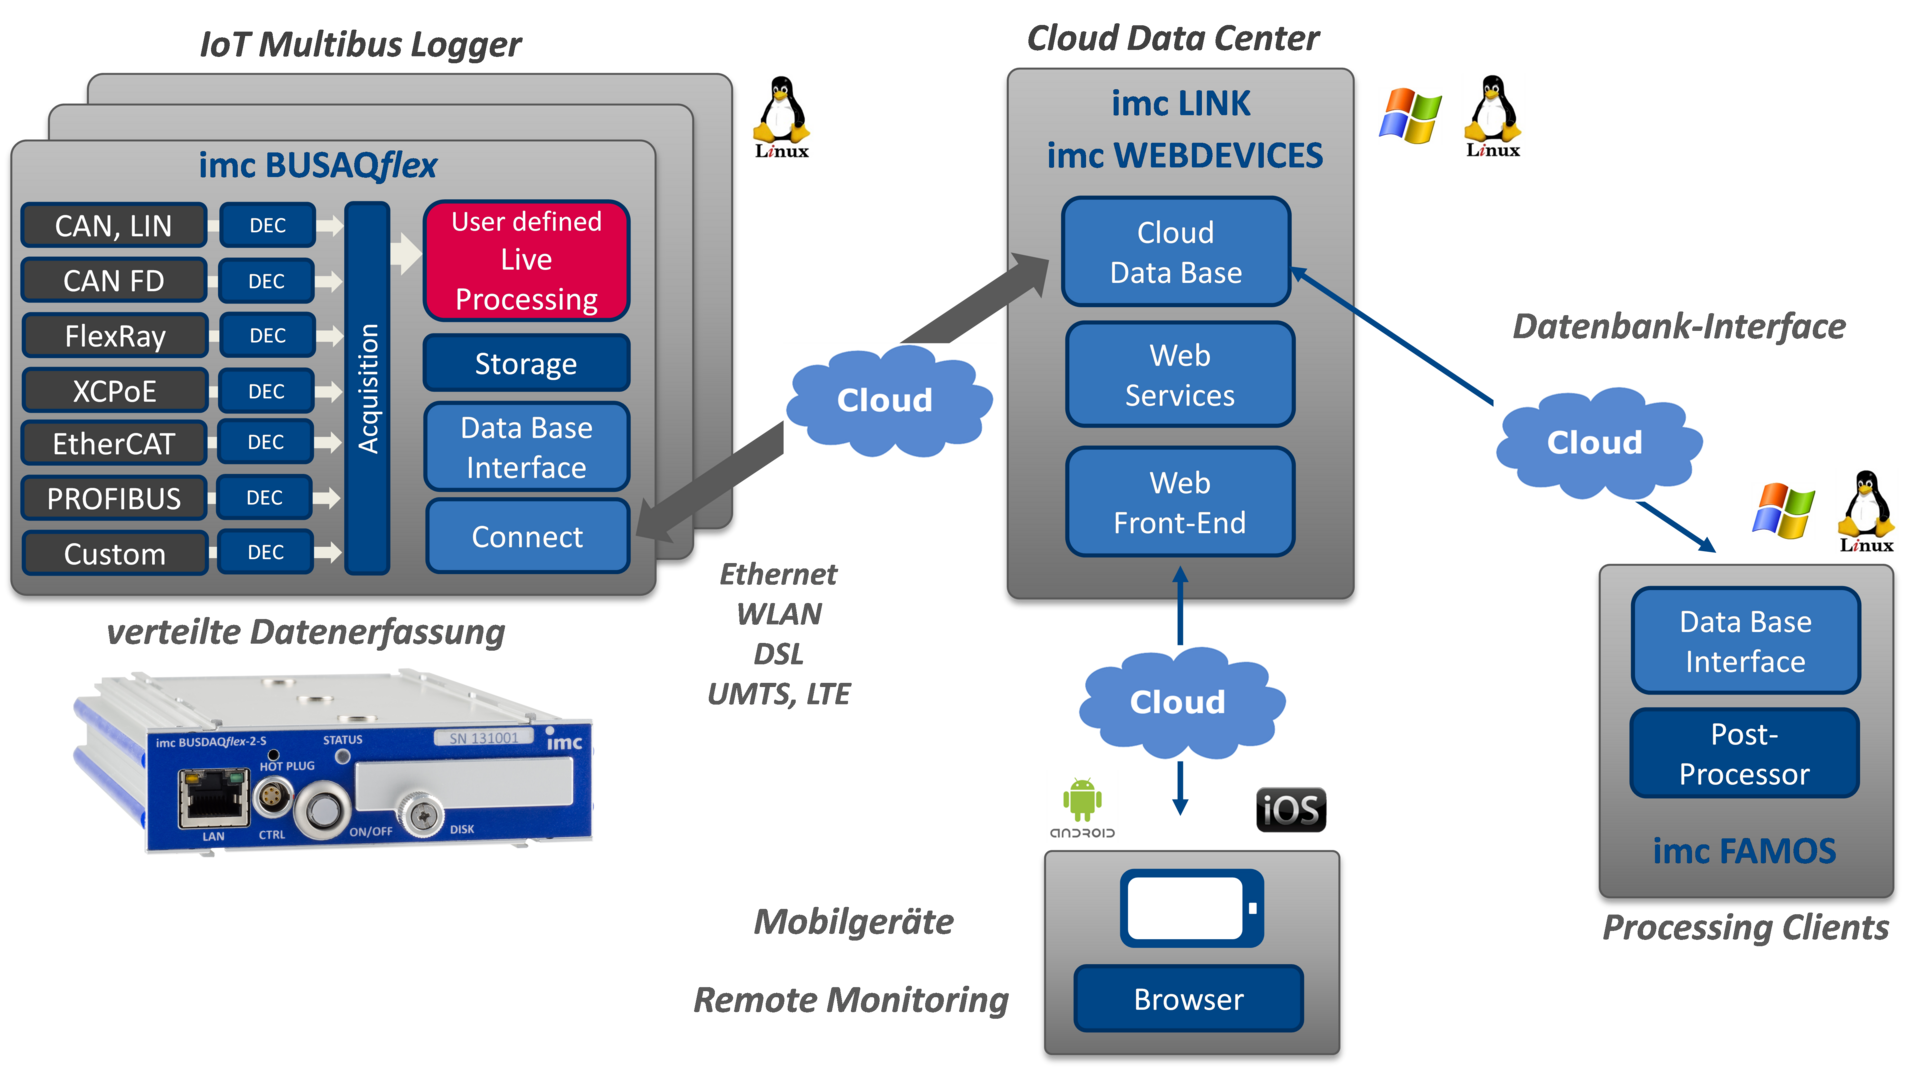 Remote Monitoring mit verteilten Multibus-Loggern als IoT Gateway zu flexiblen Cloud-Services